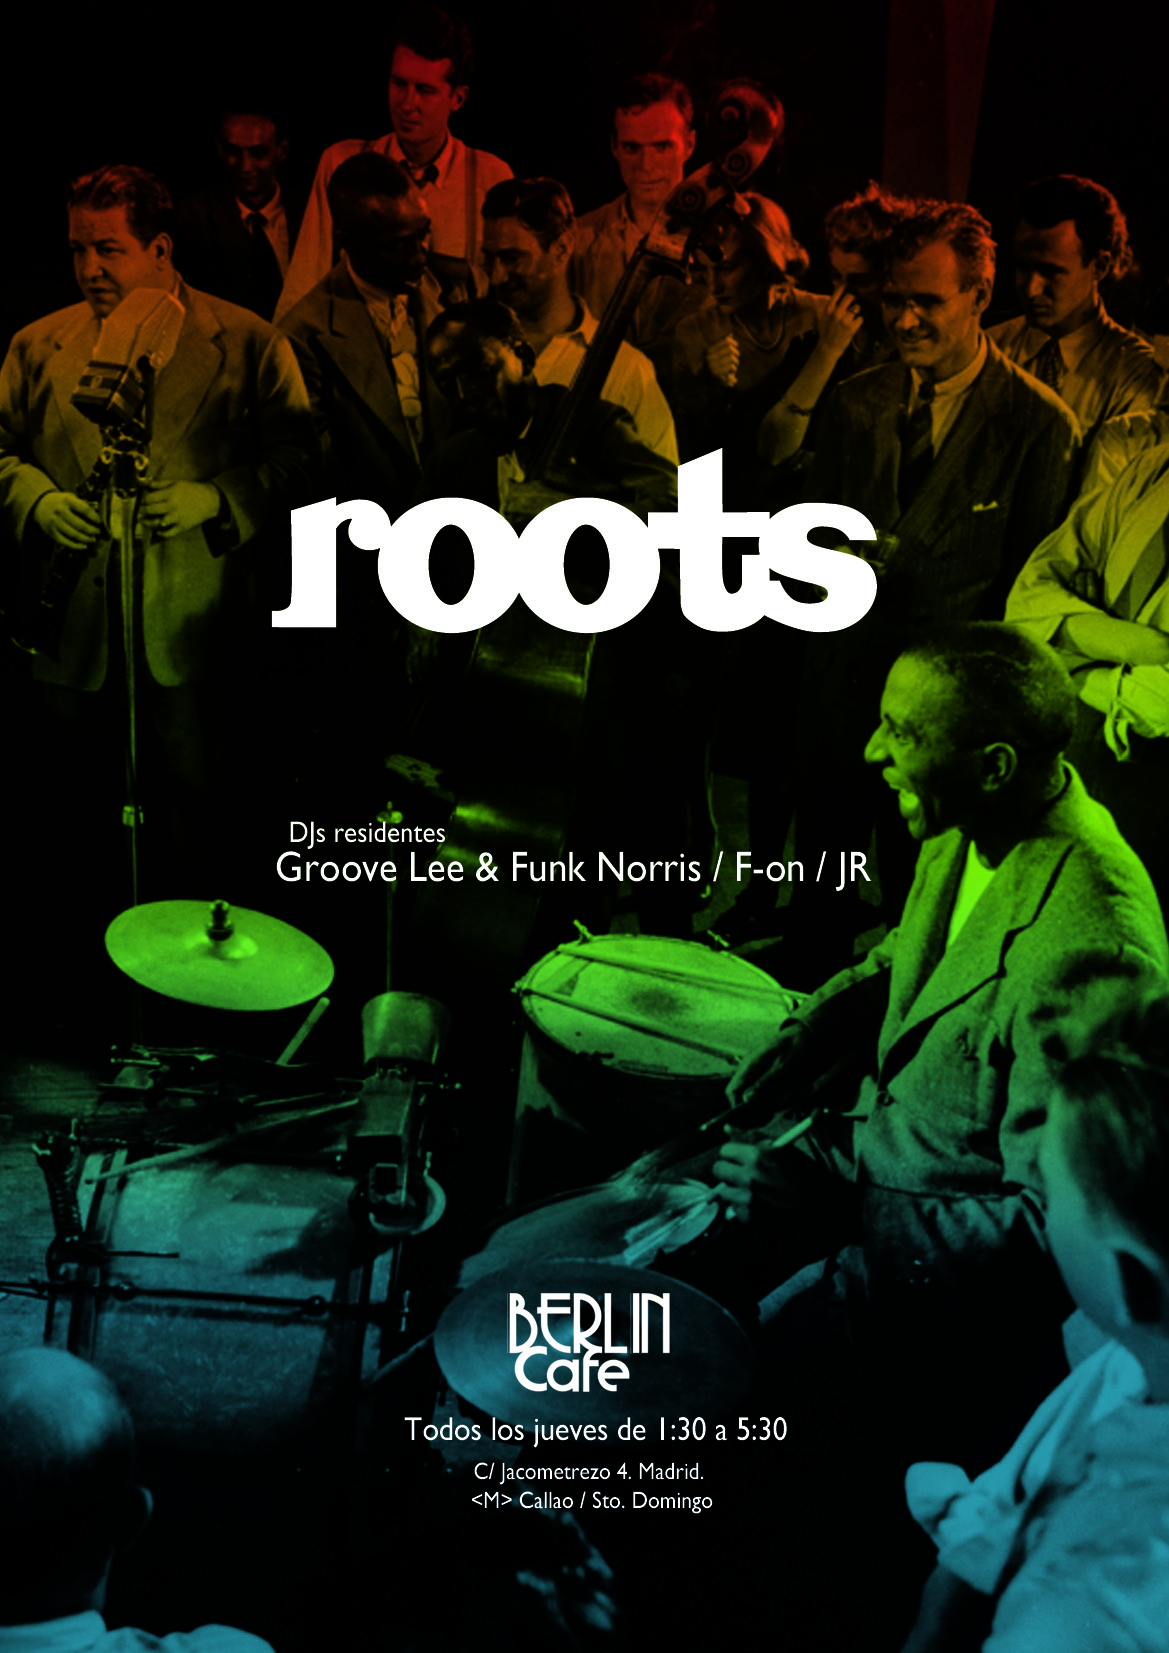 Diseño de identidad y cartelería para Roots@cafeberlin